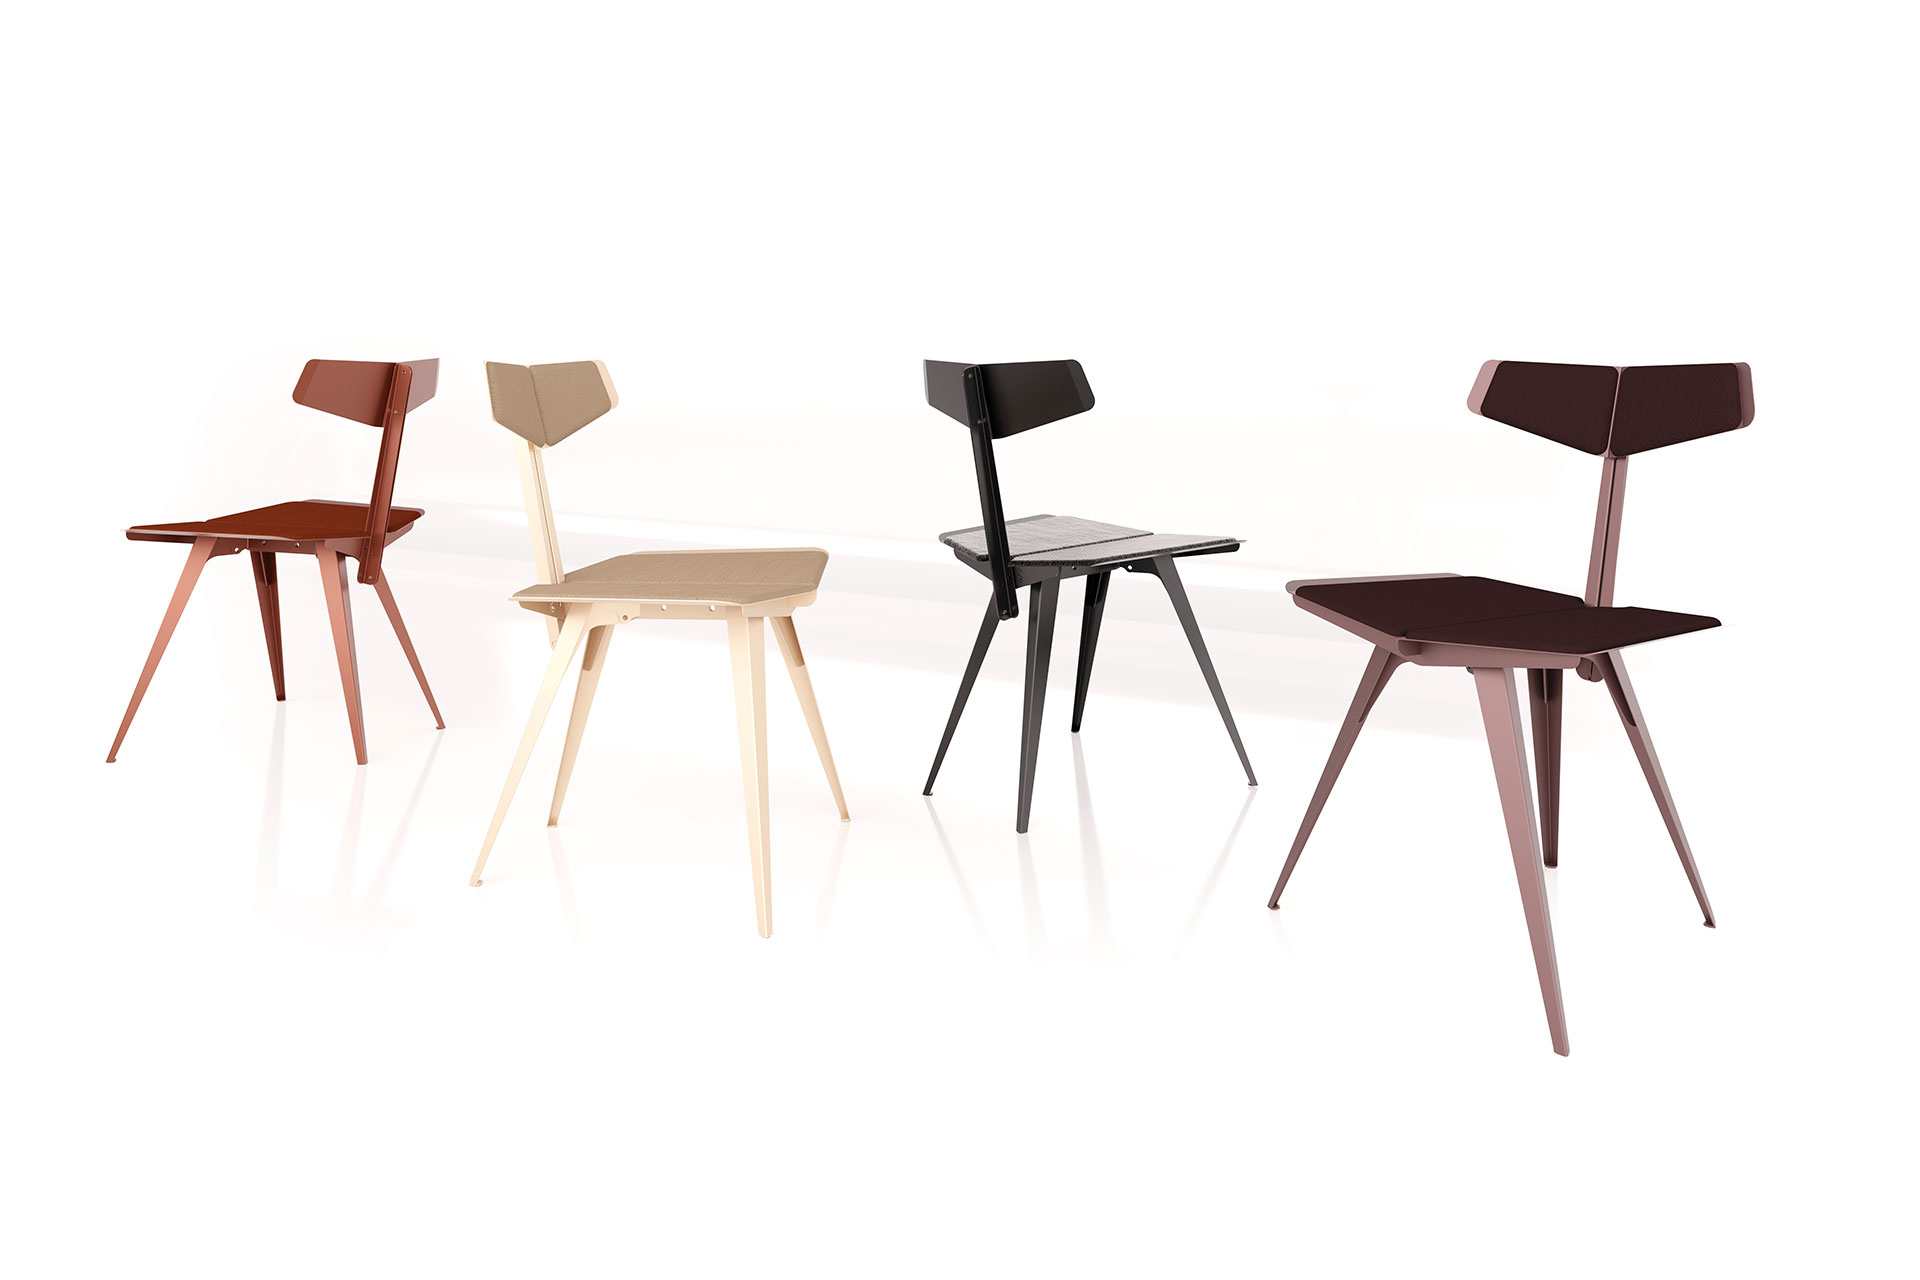 Different colour flex chairs